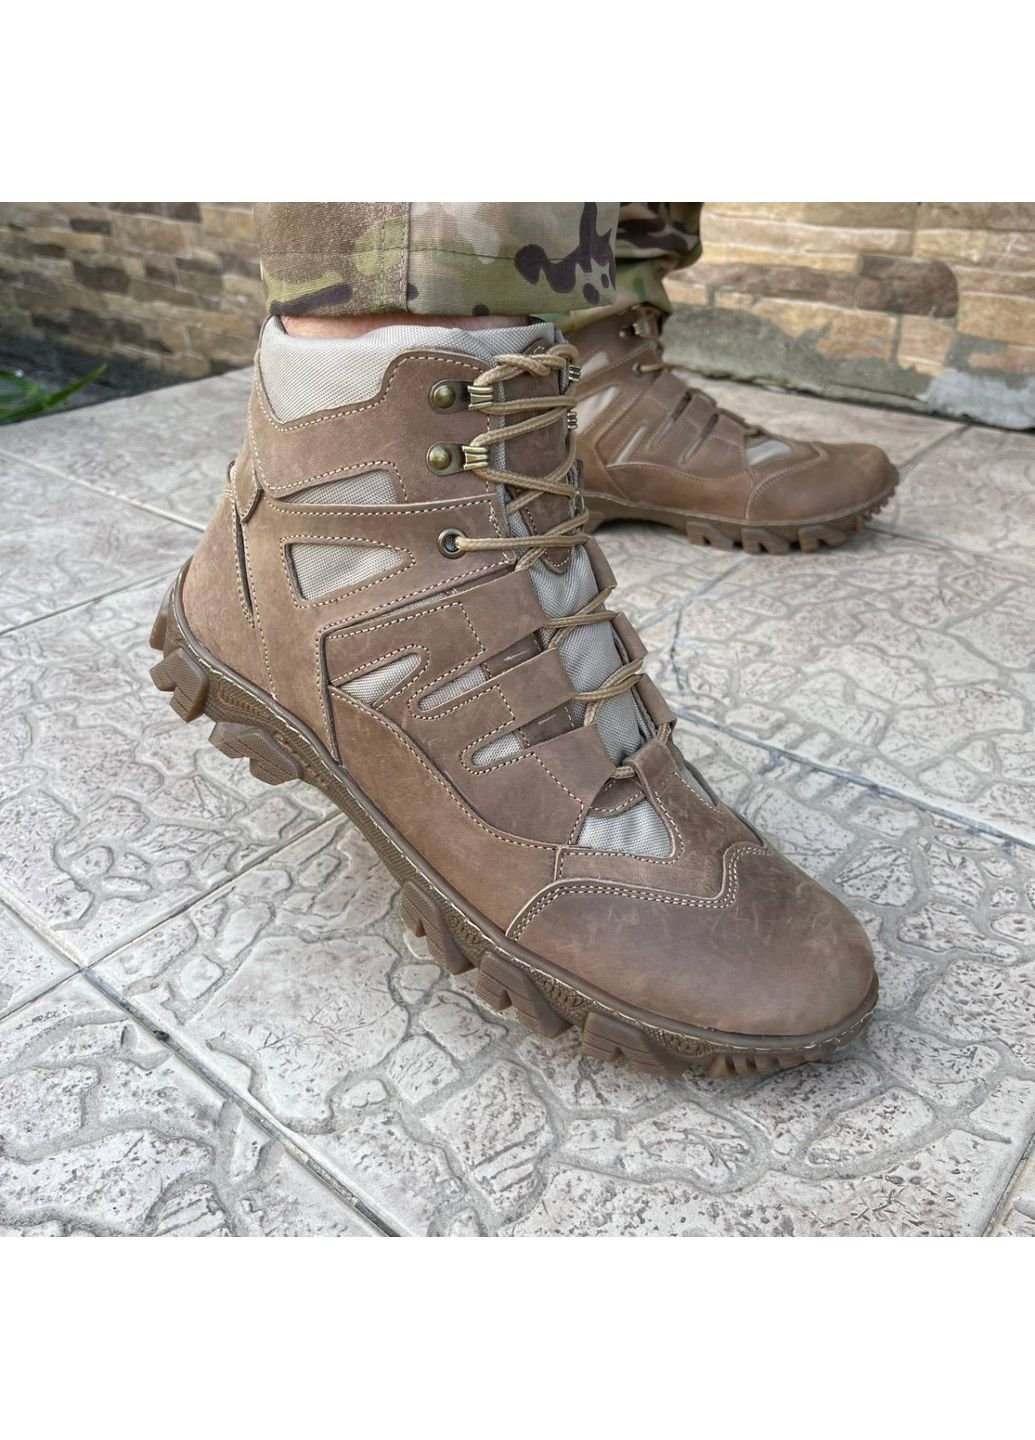 Коричневые осенние ботинки военные тактические всу (зсу) 7528 43 р 28,5 см коричневые KNF